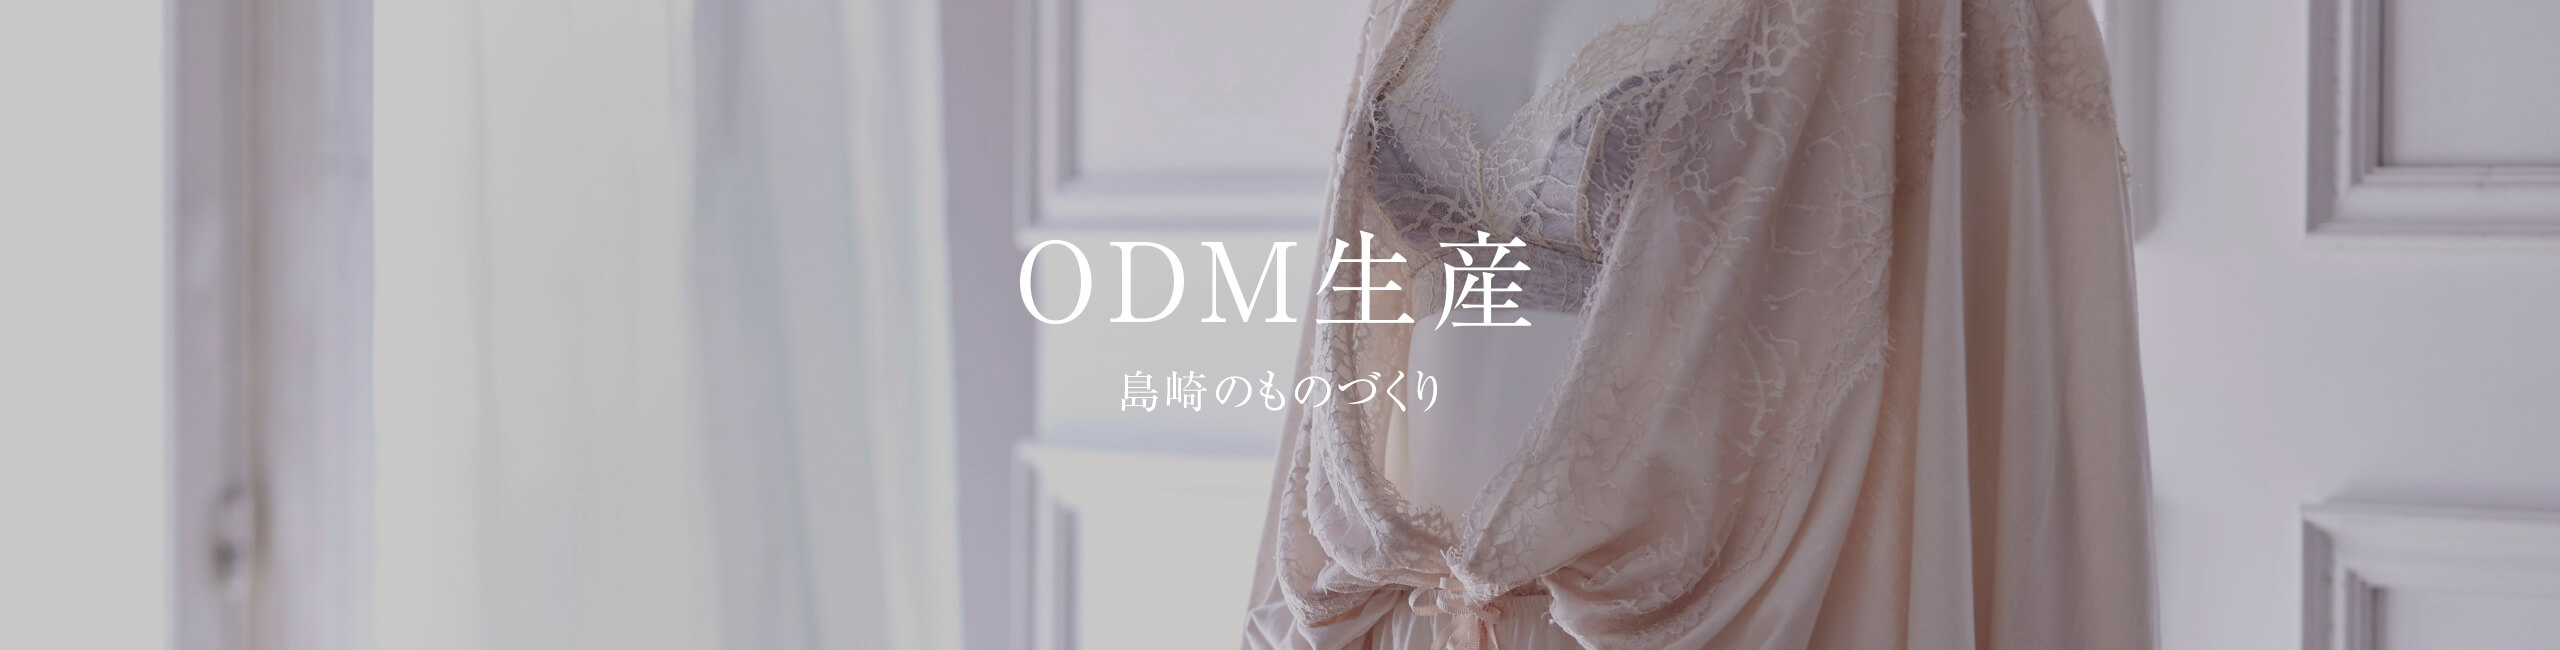 ODM生産-島崎のものづくり-